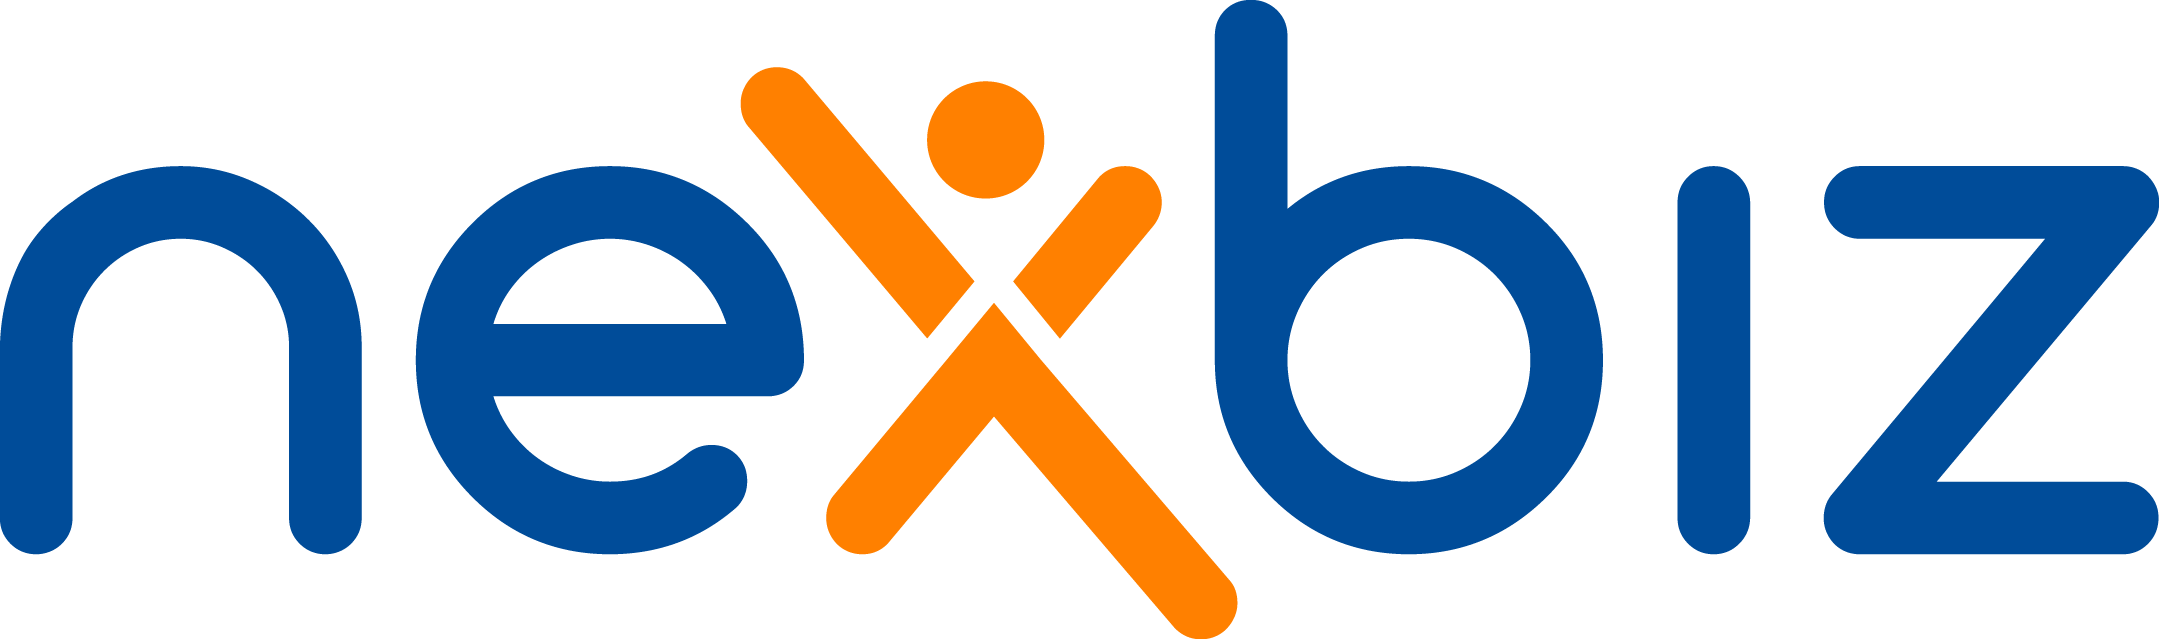 nexbiz_4_blue_Orange_without_marketing_rgb